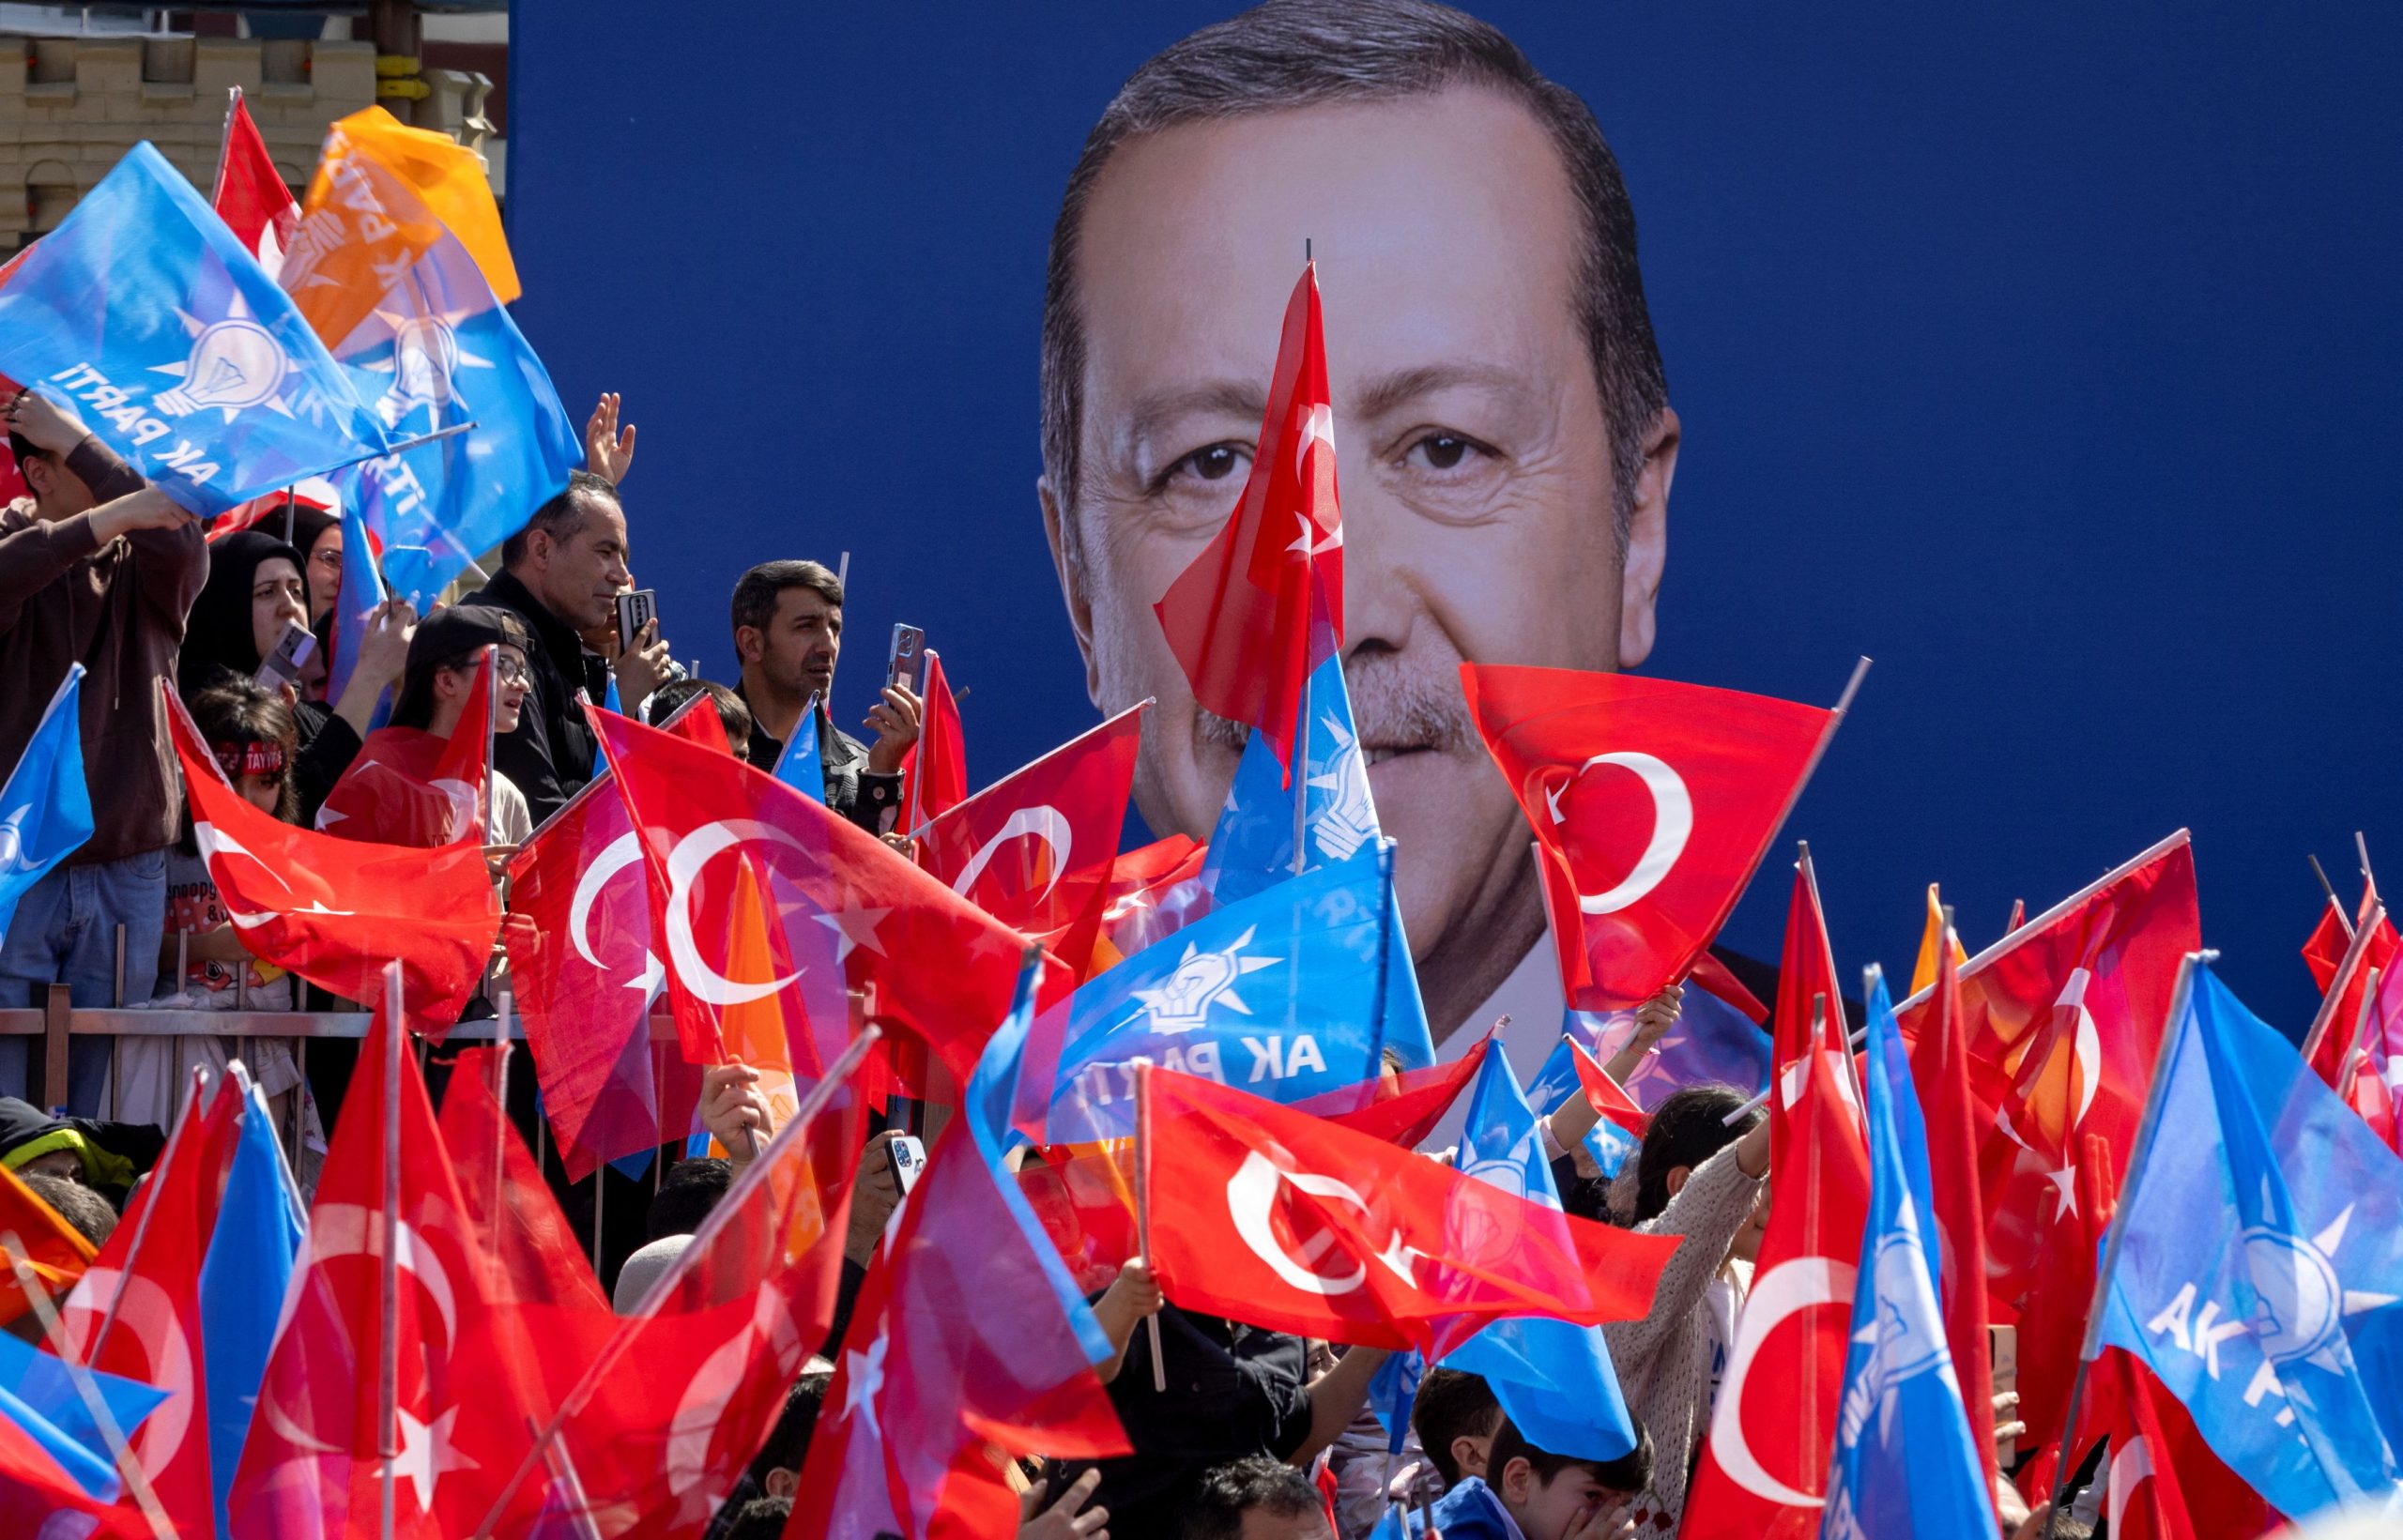 آیا «افول پوپولیسم» در ترکیه فرا رسیده است؟